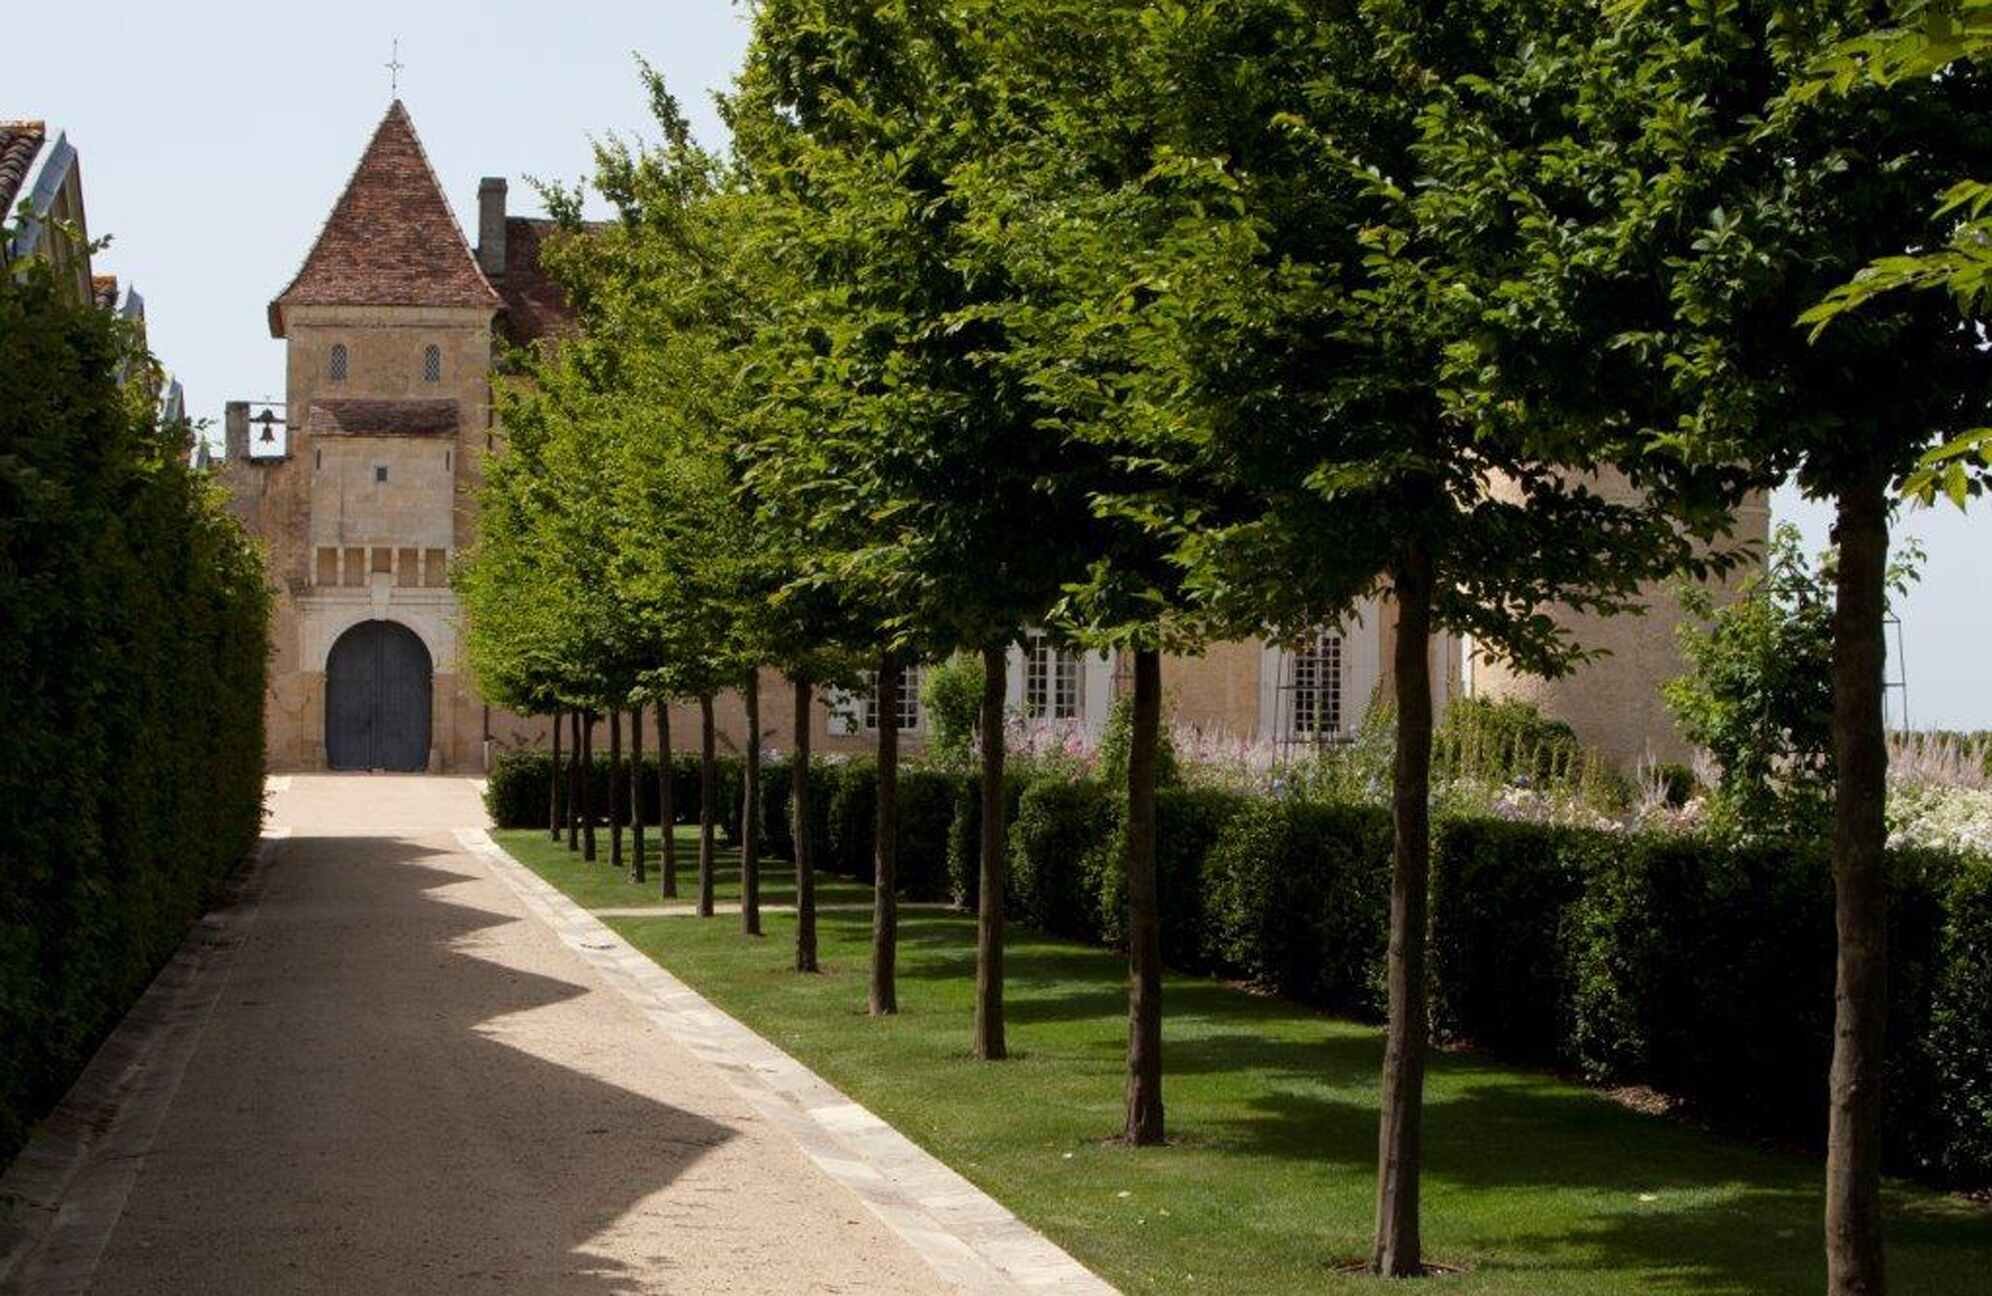 Entrance to Château d’Yquem. © Gérard Uferas